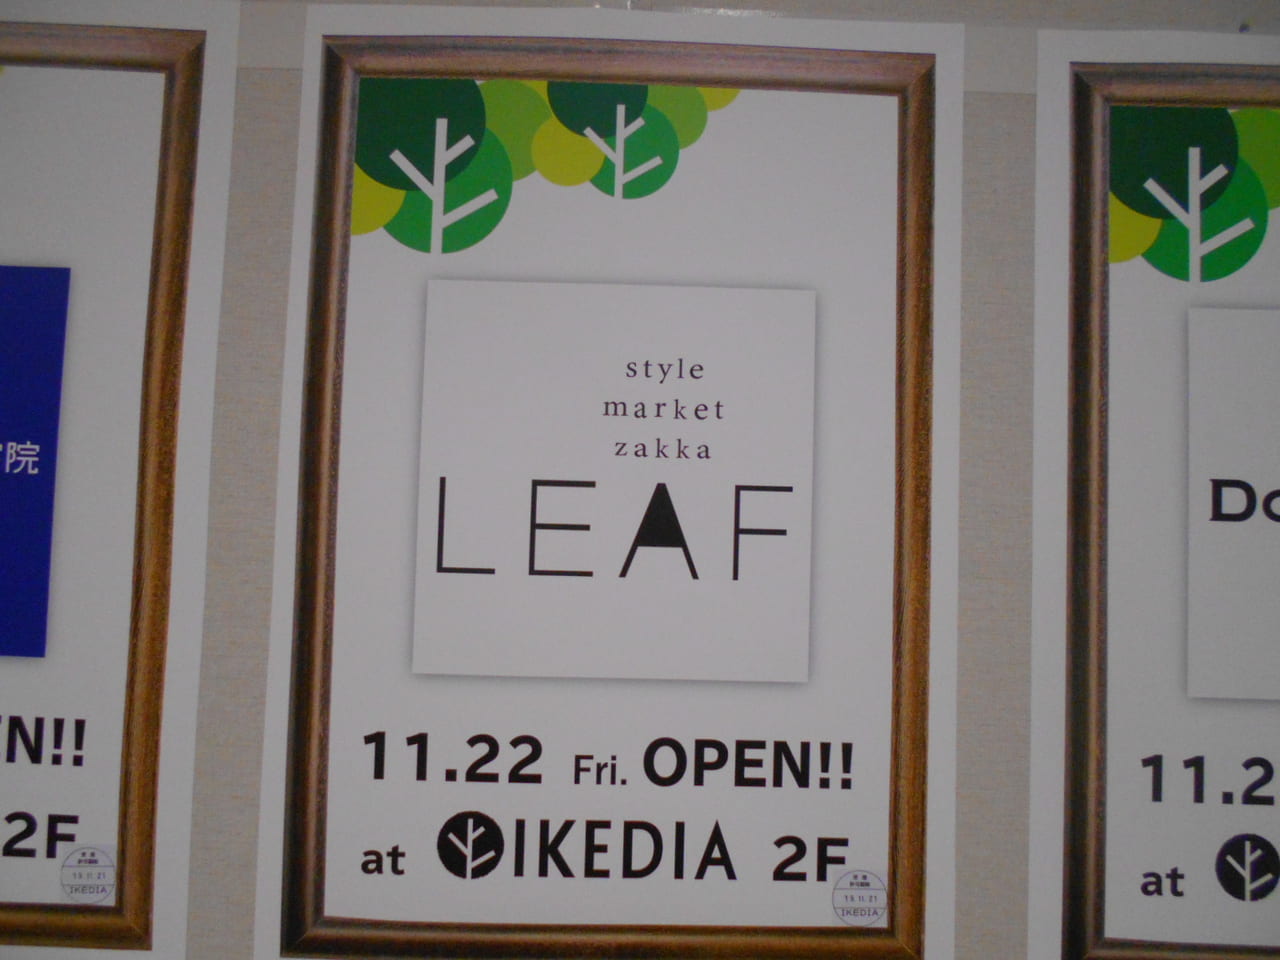 池田市 11 22 東急ハンズに続きあのお店も Ikediaでオープンラッシュです 号外net 箕面市 池田市